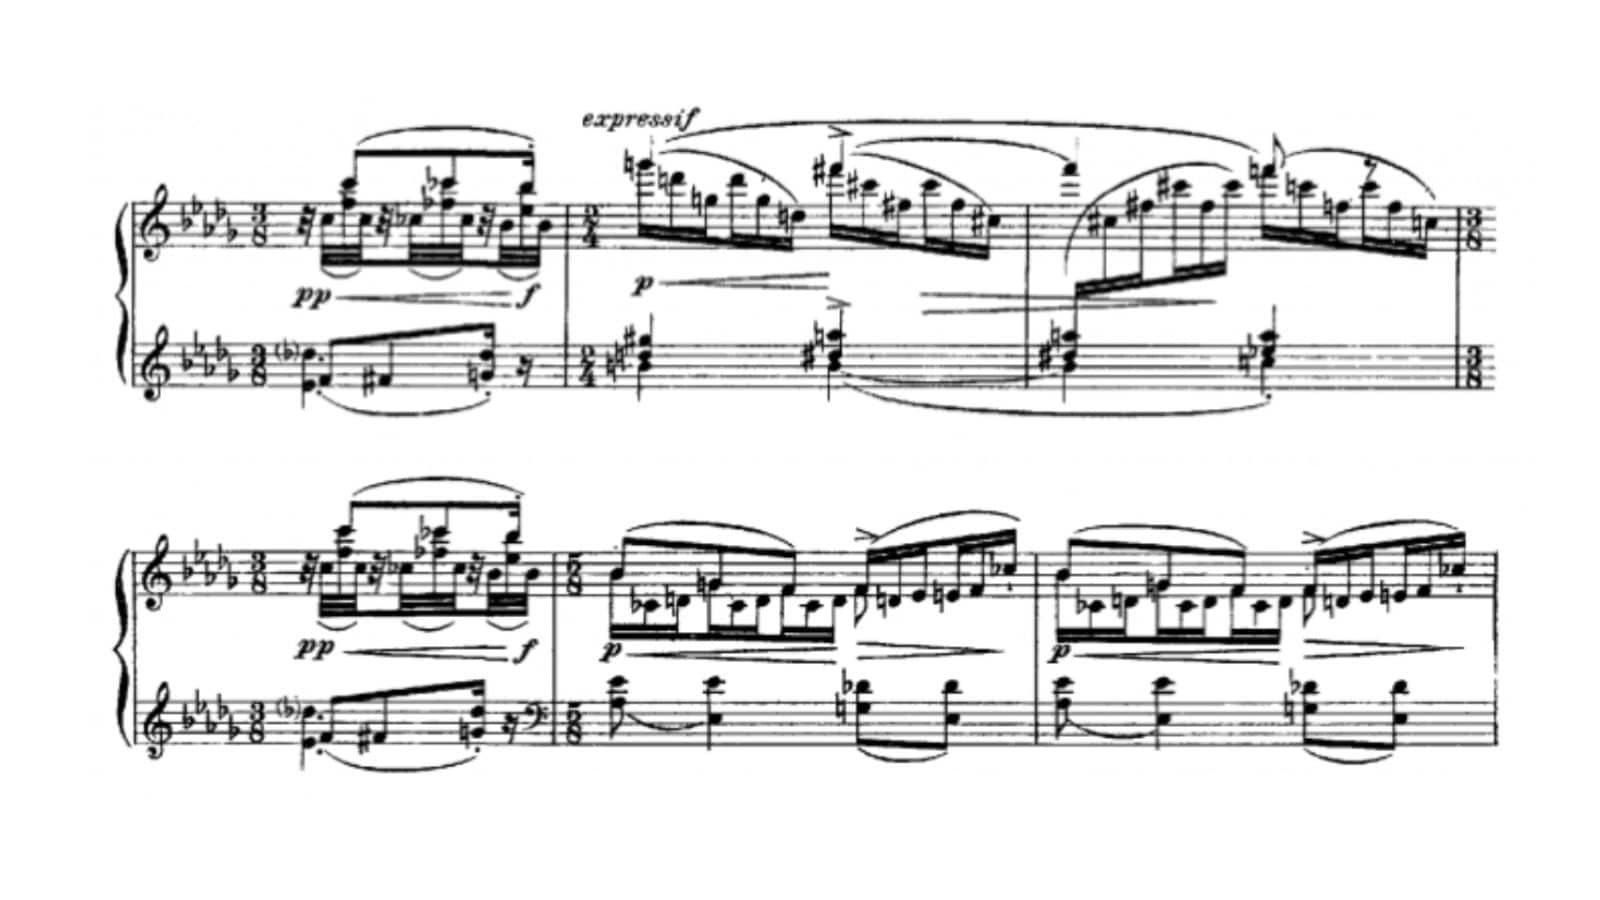 Maurice Ravel's Noctuelles